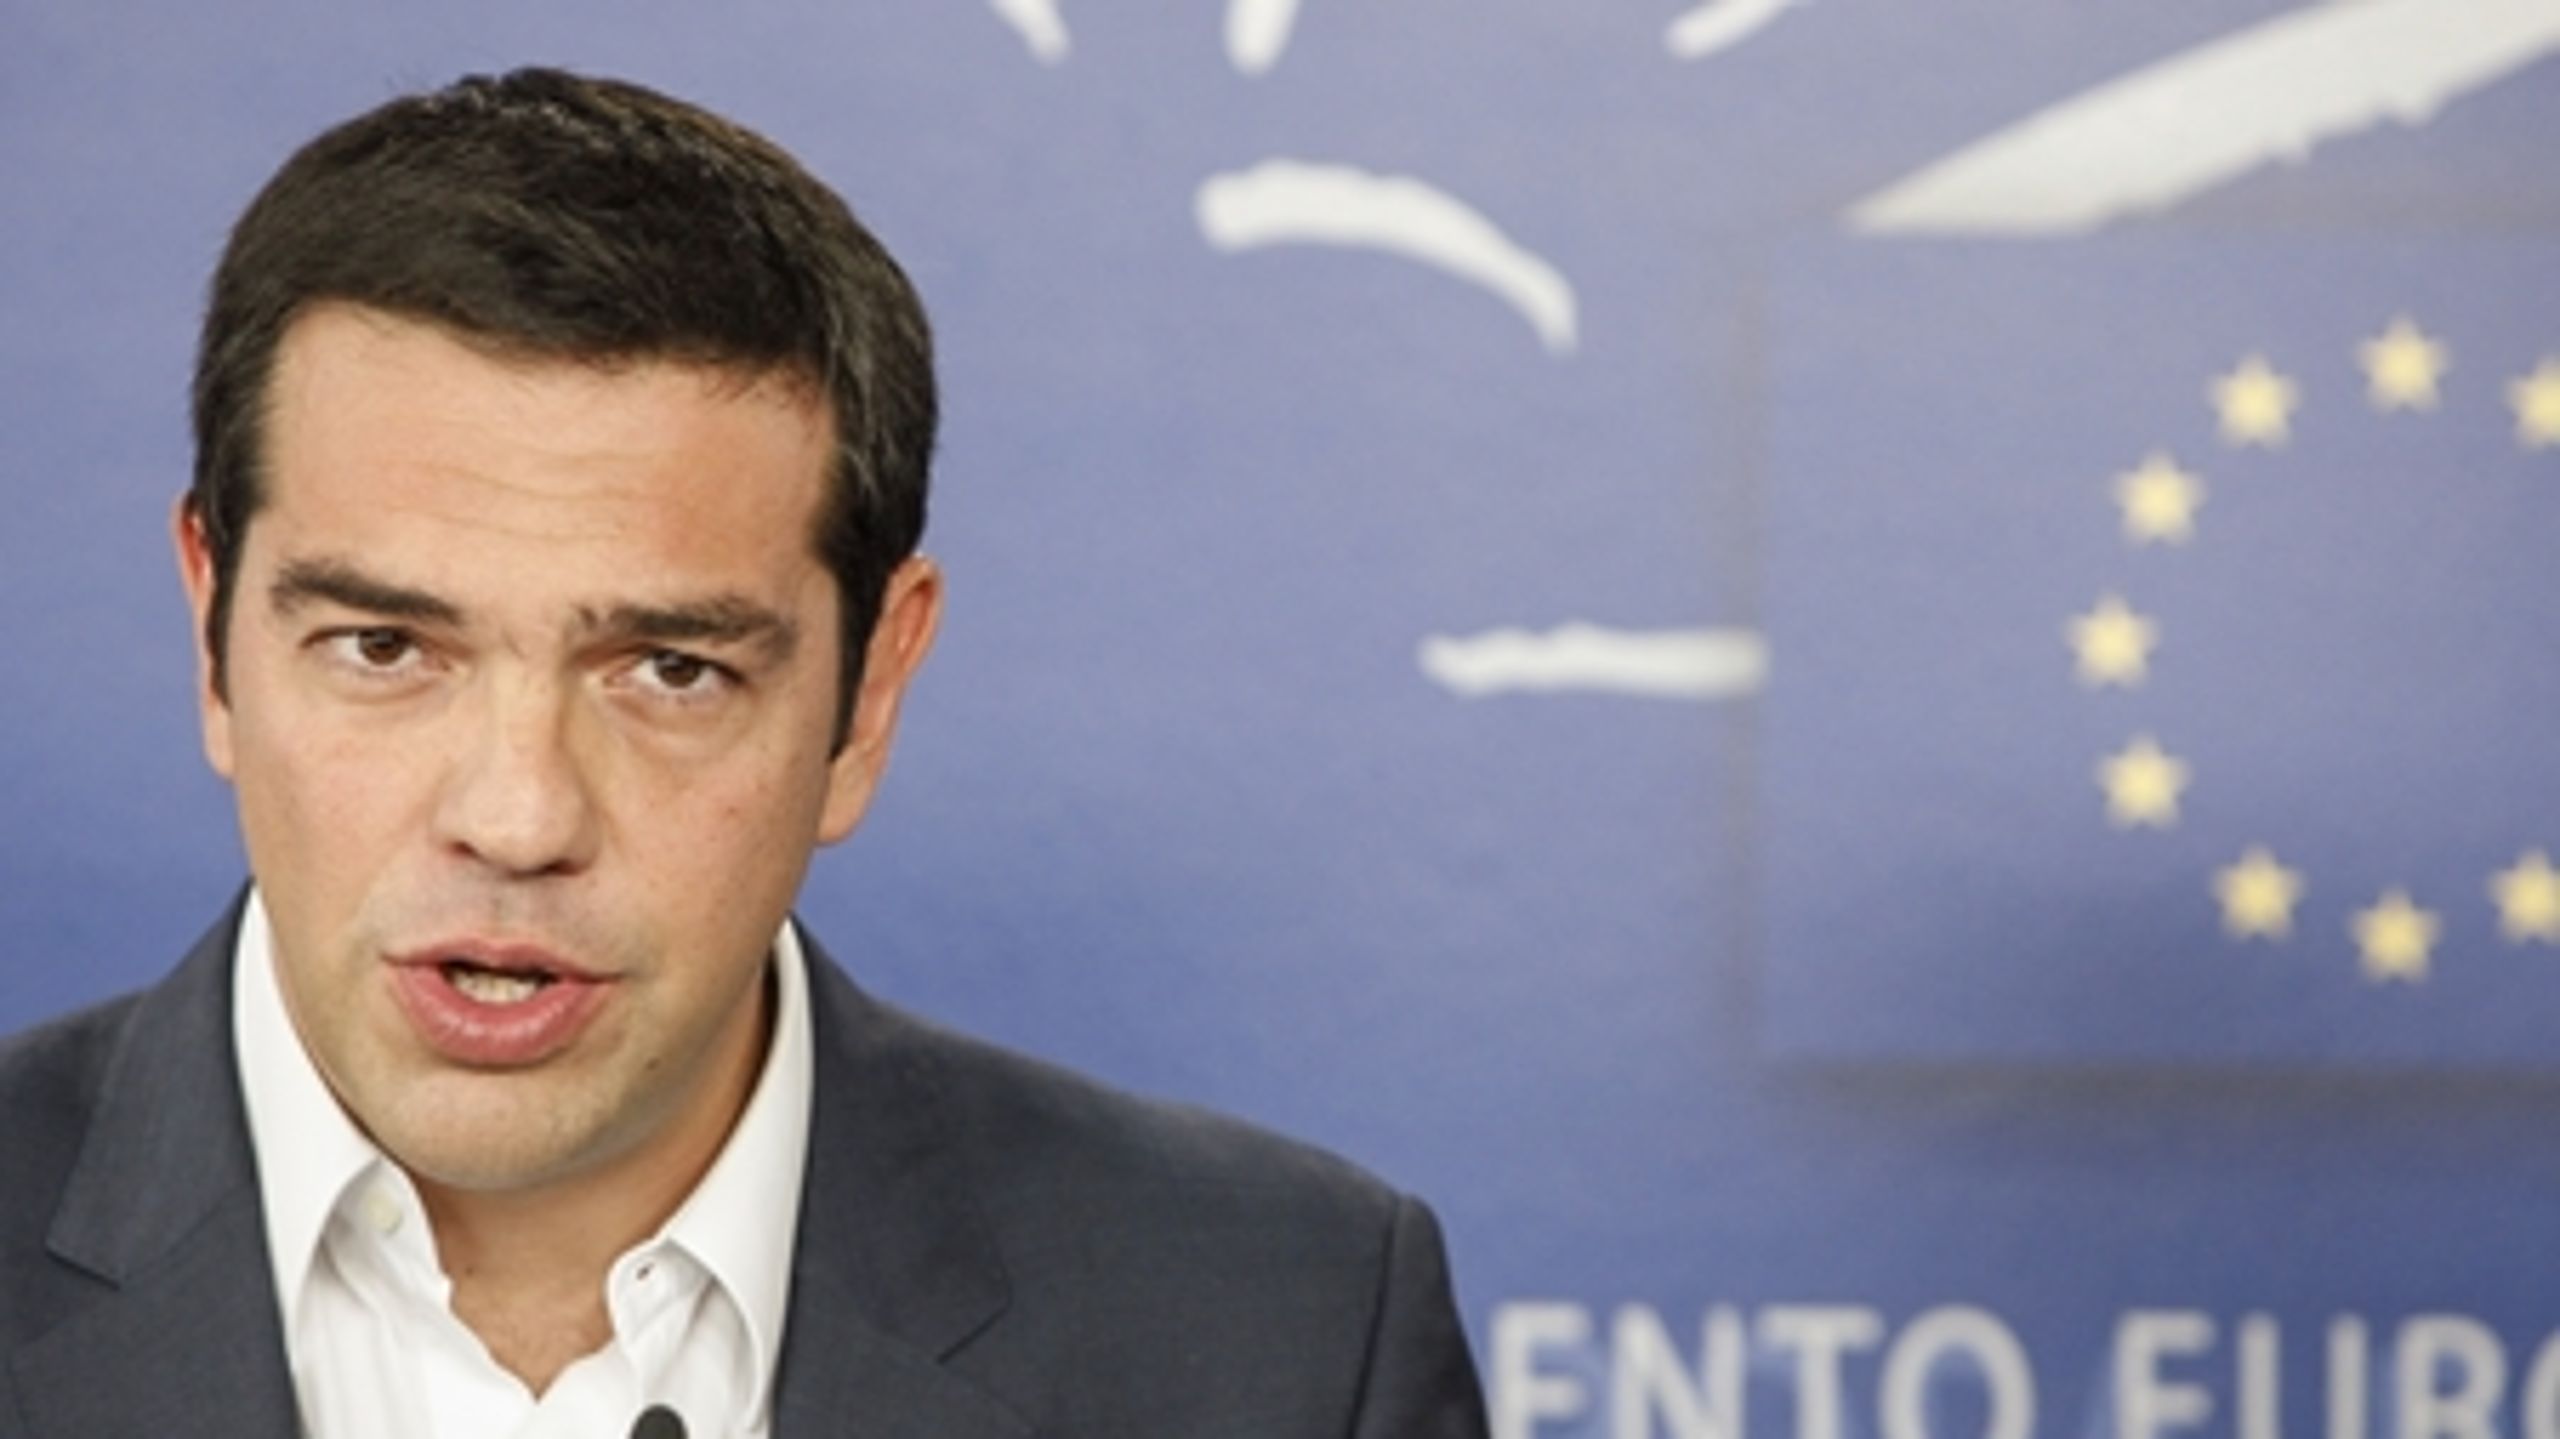 Græske Alexis Tsipras er leder af Grækenlands Koalitionen af Det Radikale Venstre (SYRIZA), der i de seneste målinger får 29 procent af stemmerne til europaparlamentsvalget.